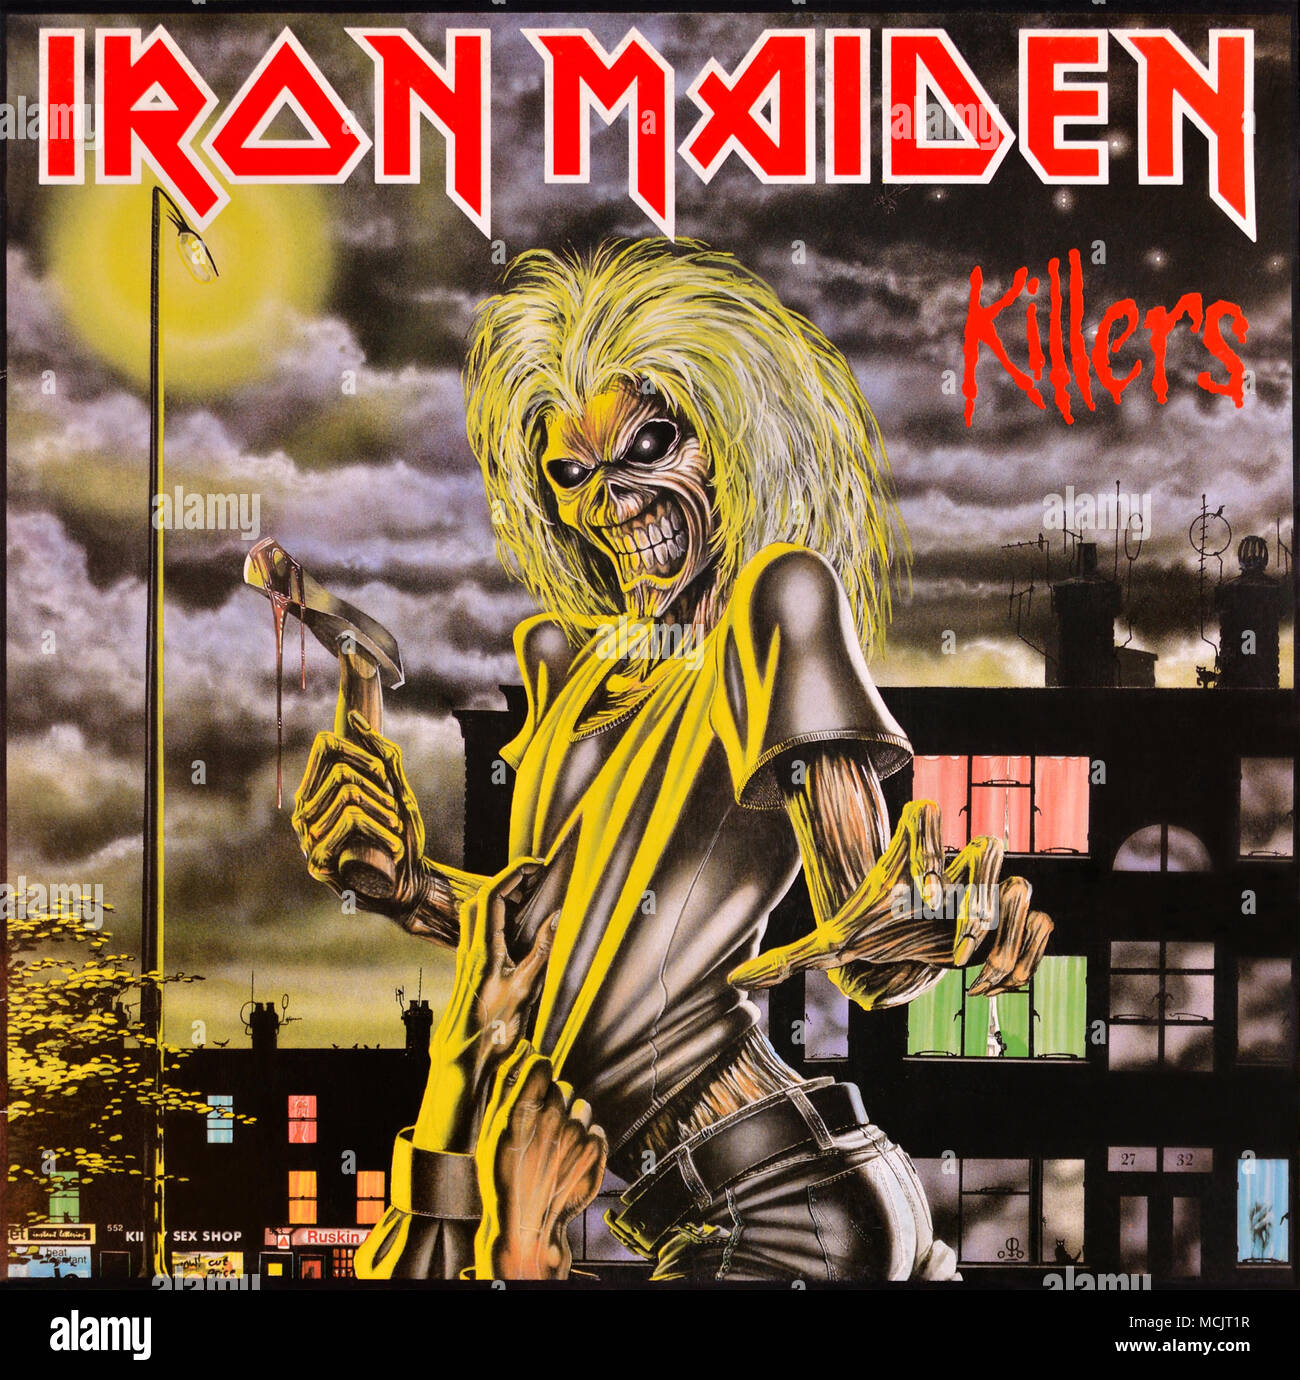 Iron Maiden - pochette originale de l'album en vinyle - Killers - 1986 ...